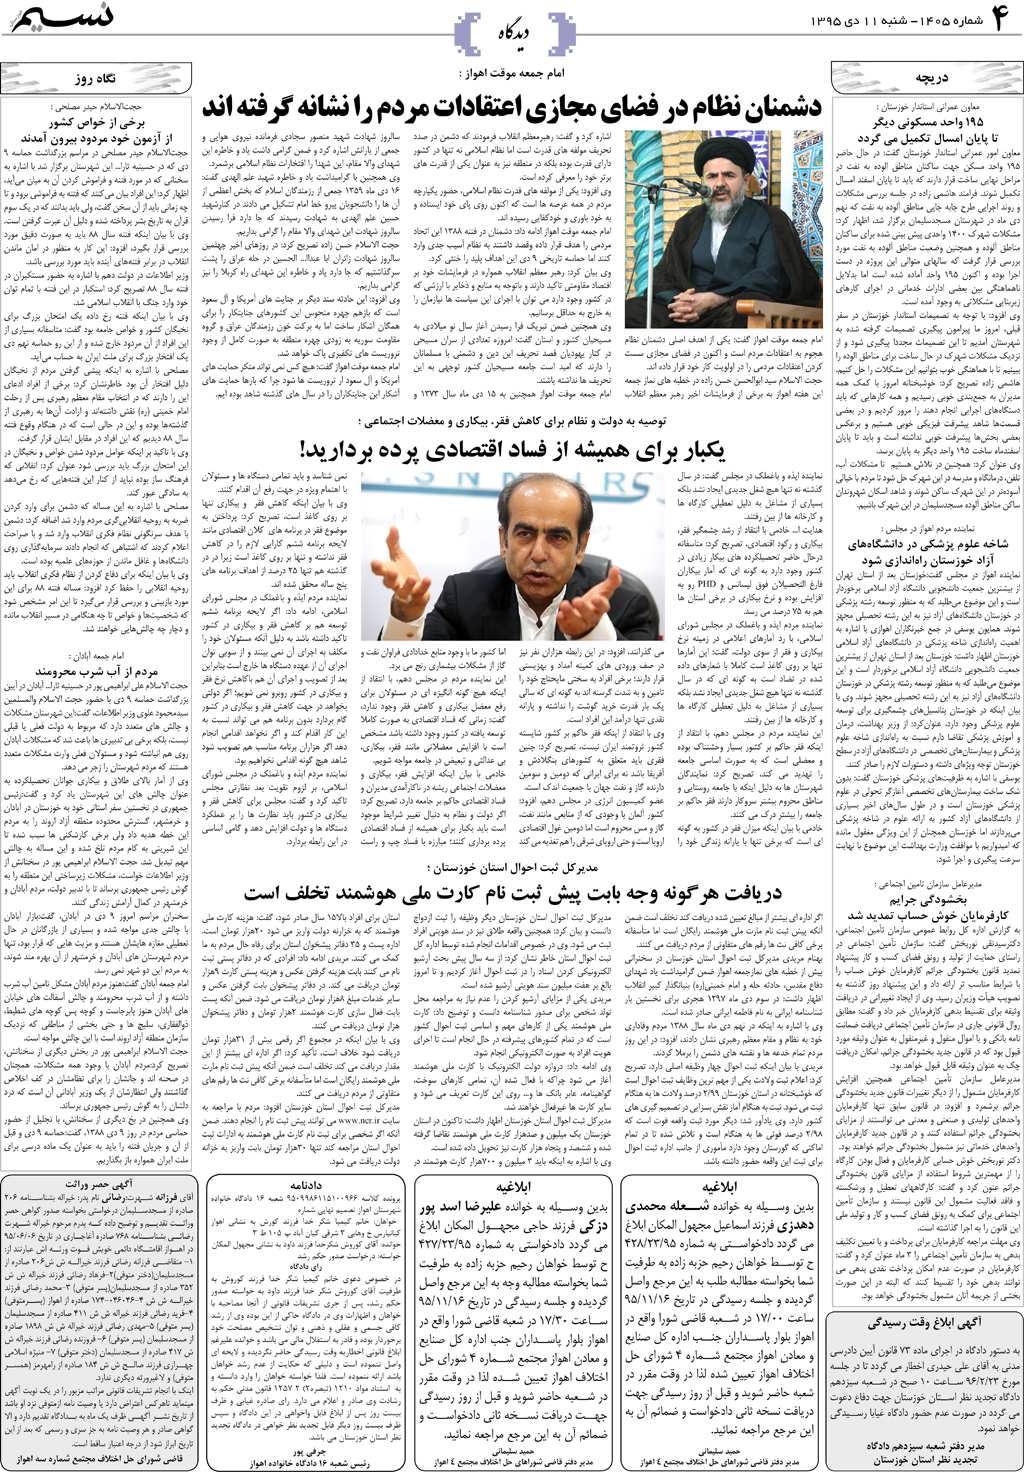 صفحه دیدگاه روزنامه نسیم شماره 1405